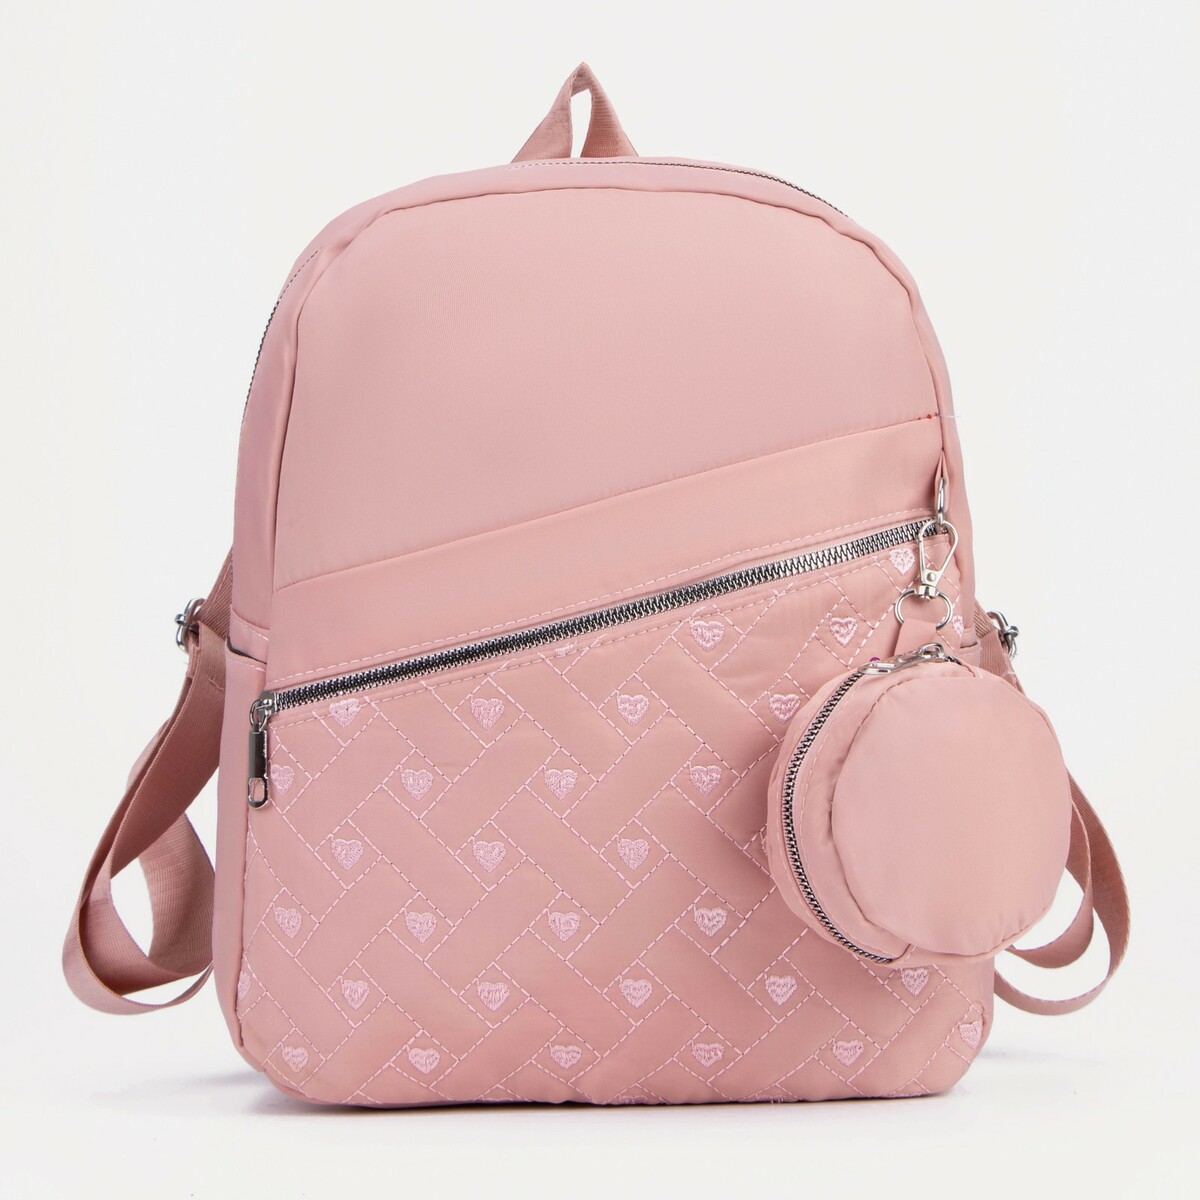 Рюкзак на молнии, наружный карман, 2 боковых кармана, кошелёк, цвет розовый, No brand